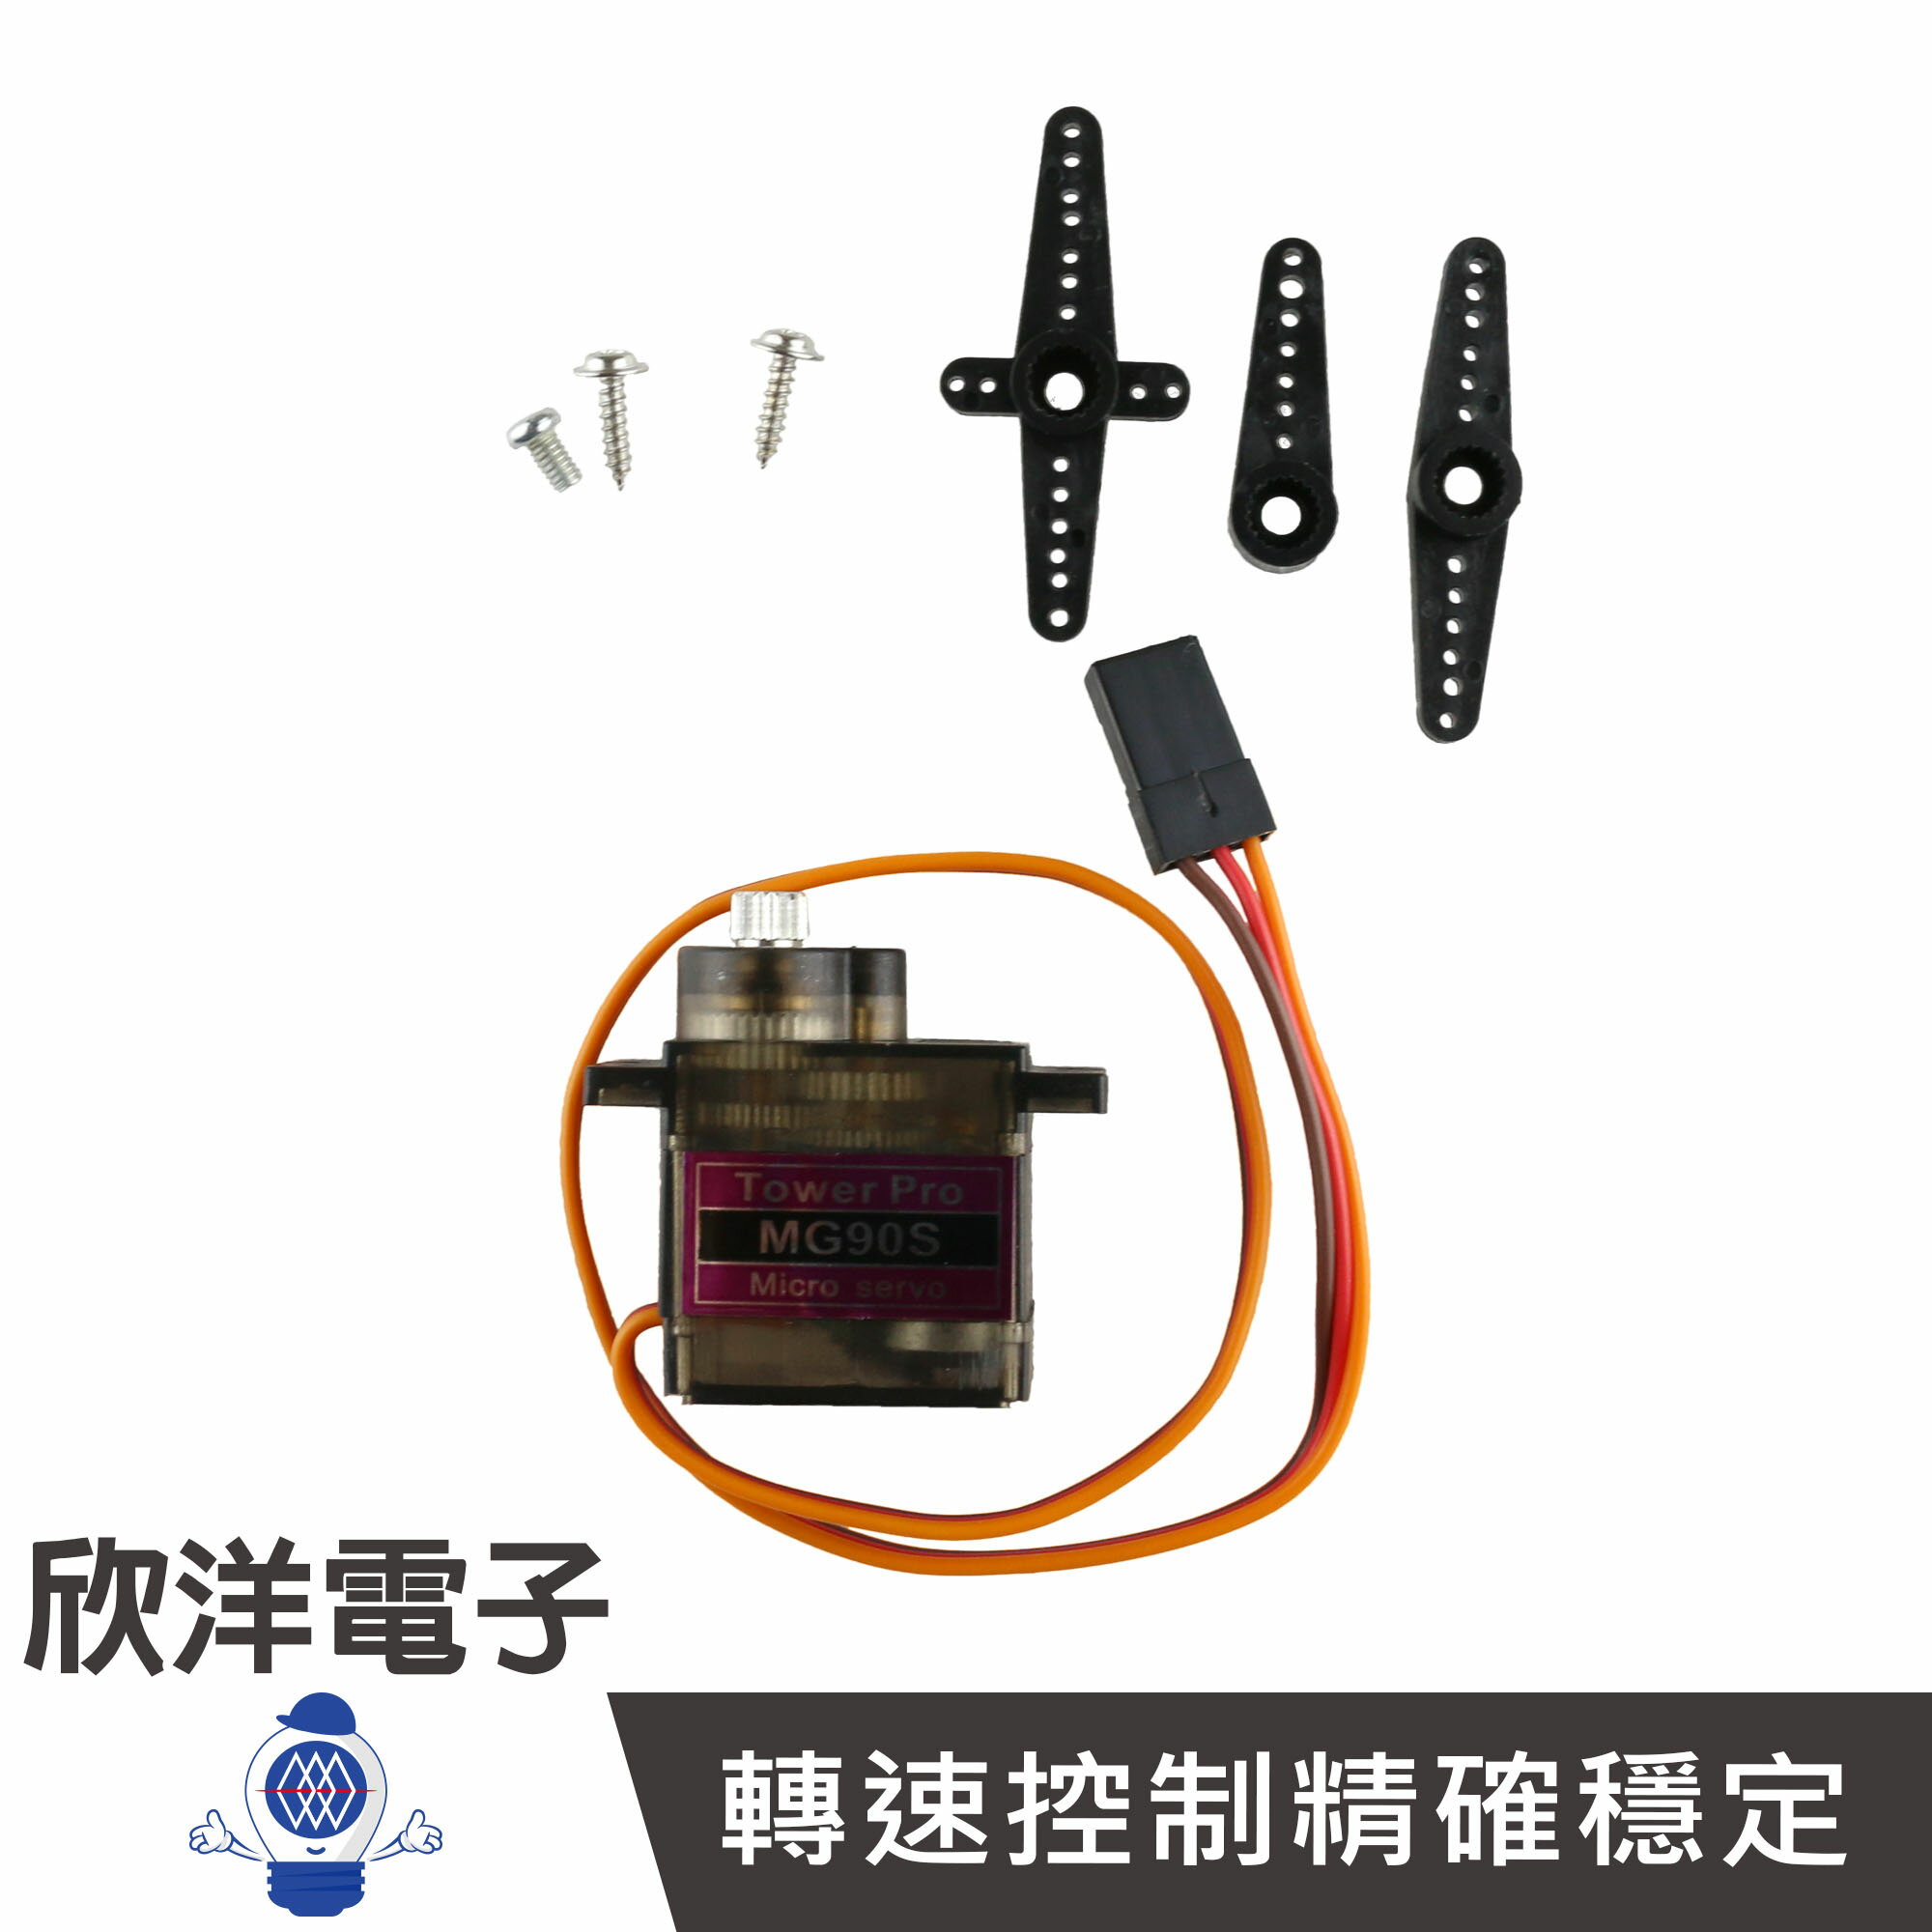 ※ 欣洋電子 ※ MG-90S 伺服馬達 (1057C) 實驗室 學生模組 電子材料 電子工程 適用Arduino